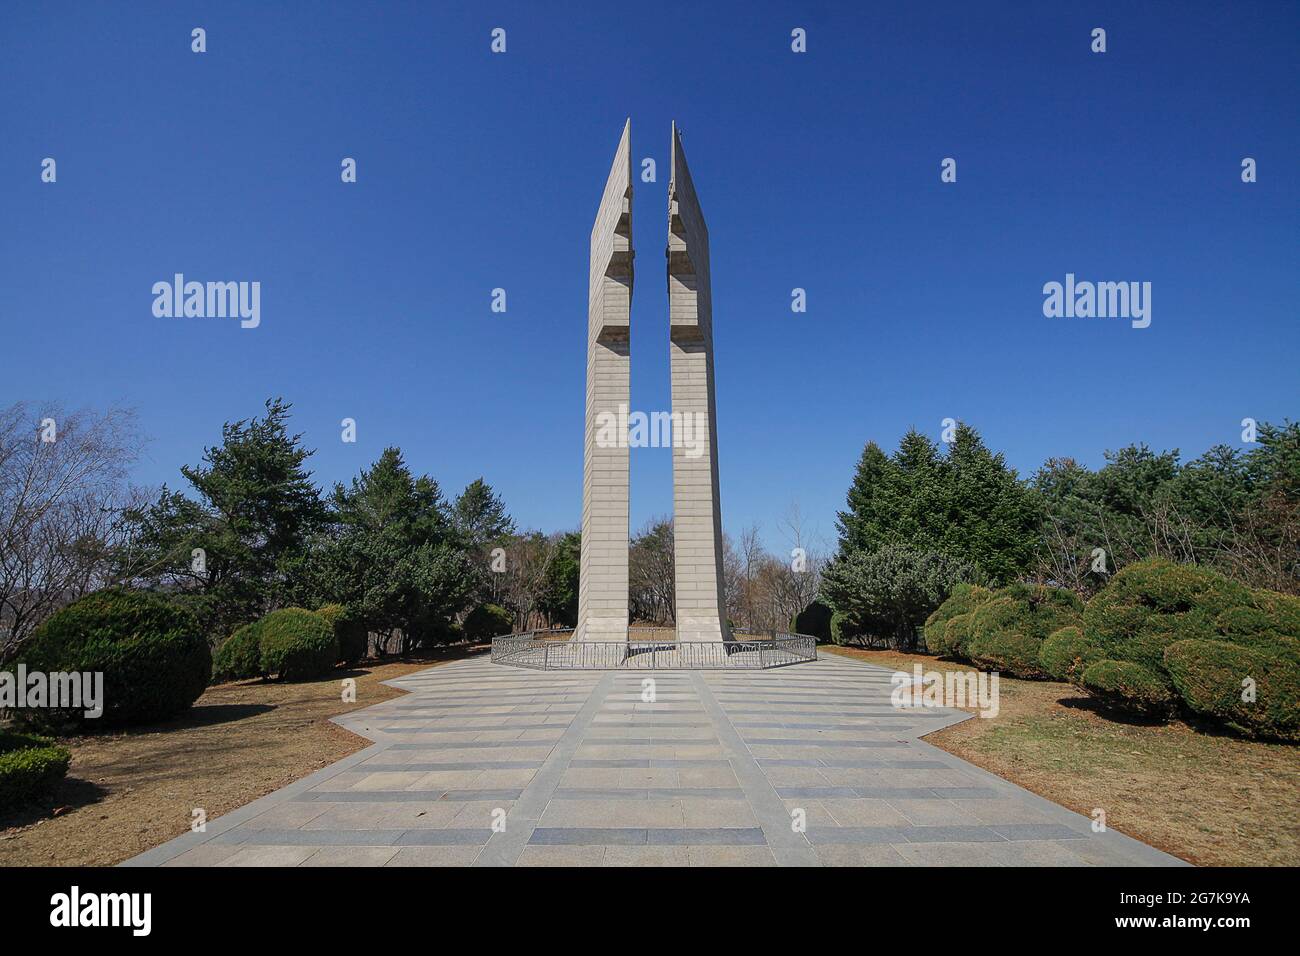 11 avril 2018-Goyang, Corée du Sud-UNE vue de la guerre de Corée bataille de cheval blanc monument commémoratif à Cheorwon, Corée du Sud. La bataille de White Horse fut une autre d'une série de batailles sanglantes pour les positions dominantes sur les collines pendant la guerre de Corée. Baengma-goji était une colline de 395 mètres (1,296 pieds) dans le triangle de fer, formé par Pyonggang à son sommet et Gimhwa-eup et Cheorwon à sa base, était une voie de transport stratégique dans la région centrale de la péninsule coréenne. White Horse était la crête d'une masse de collines boisées qui s'étendait du nord-ouest au sud-est sur environ 3 km (3 milles), en pennsylvanie Banque D'Images